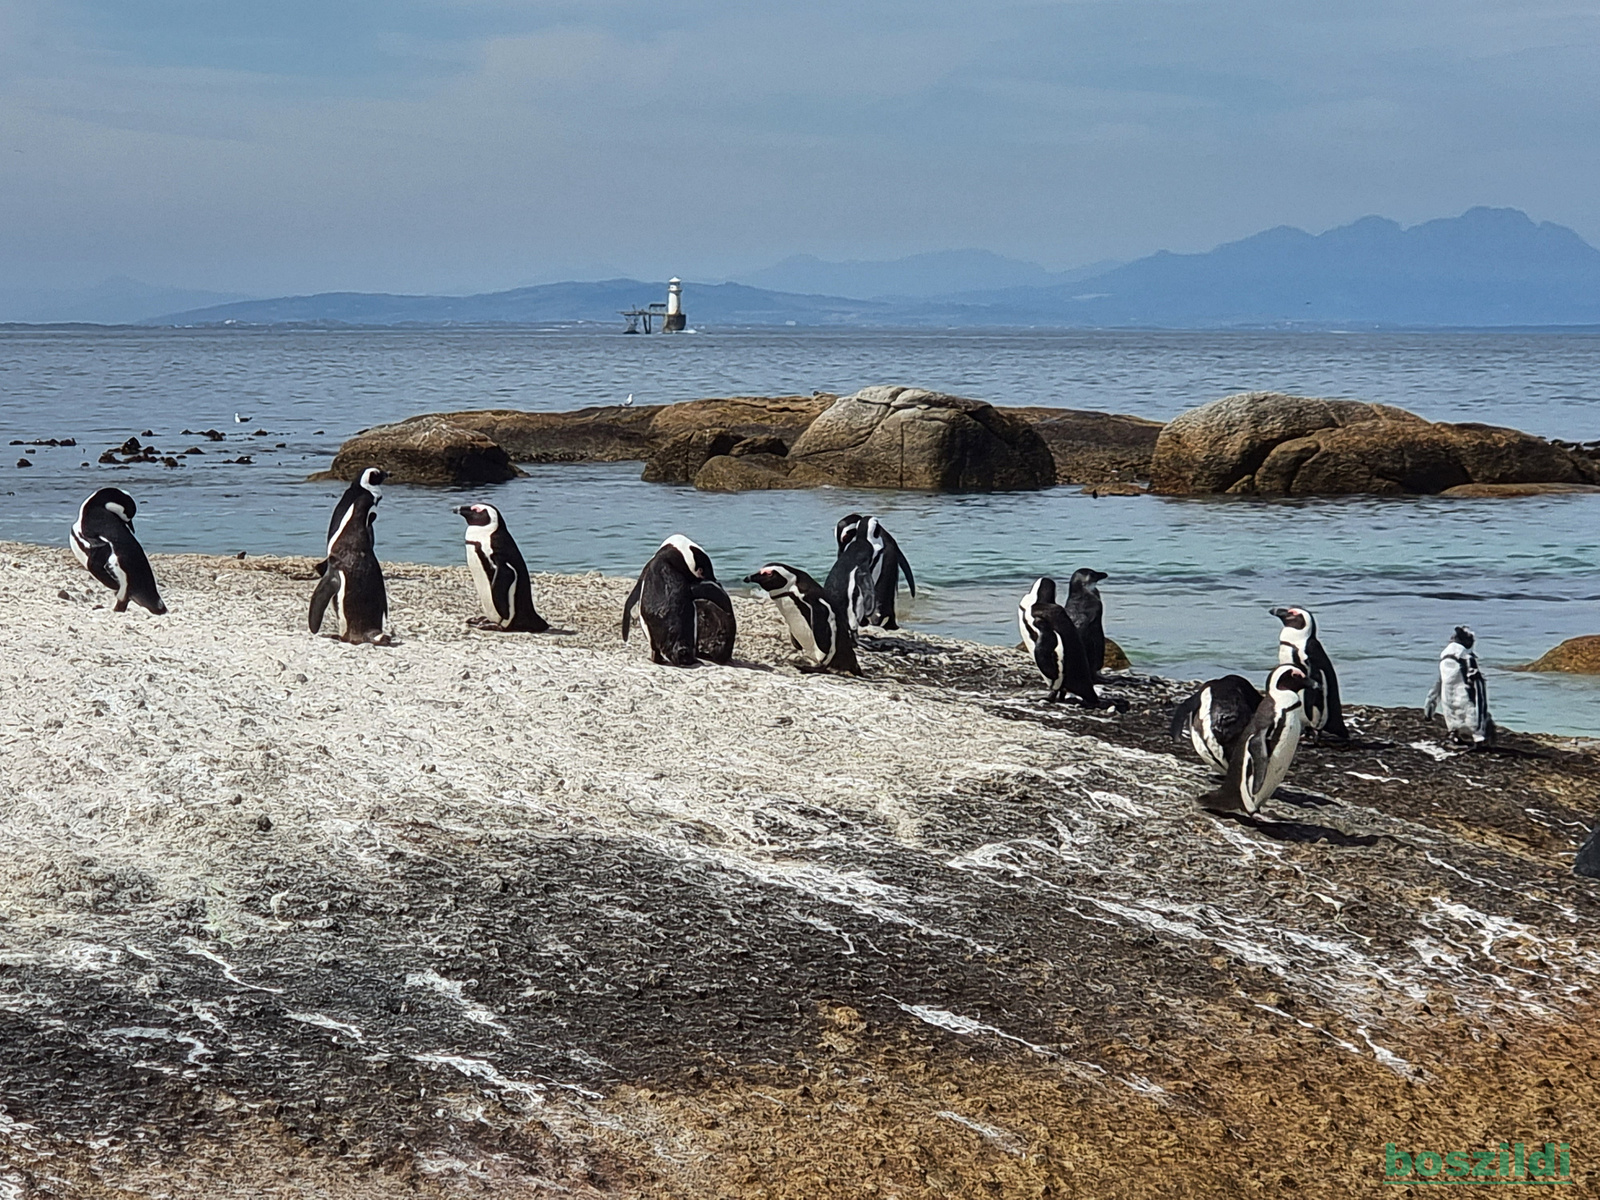 21 Pingvin öböl